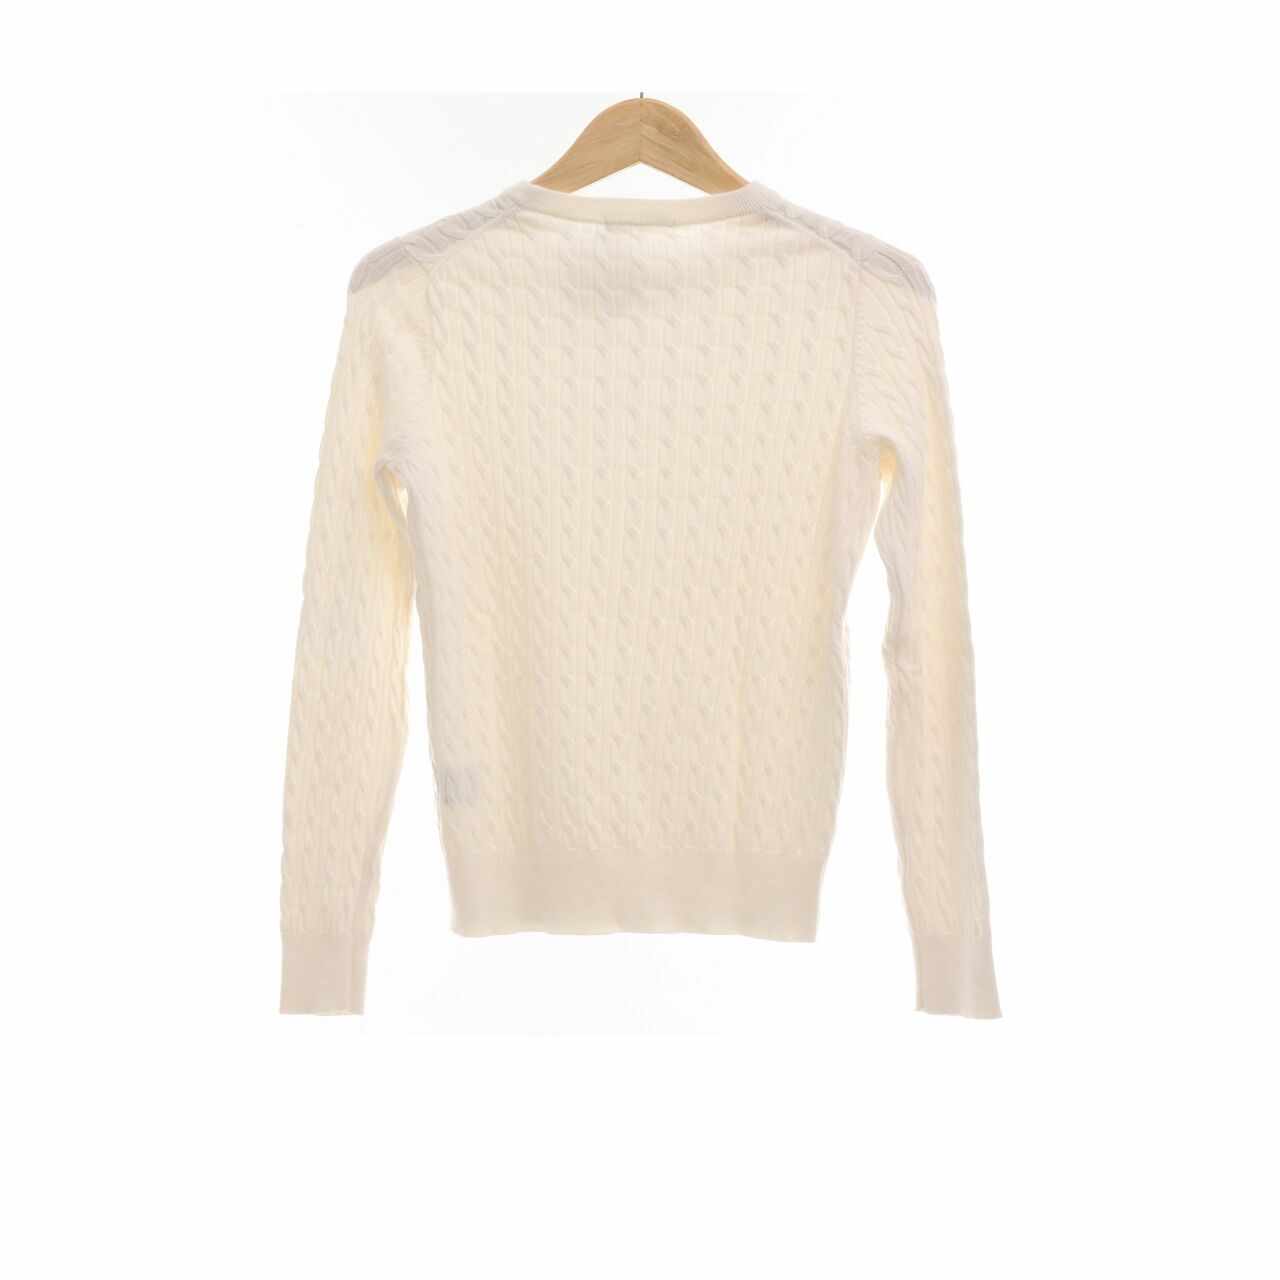 UNIQLO White Sweater